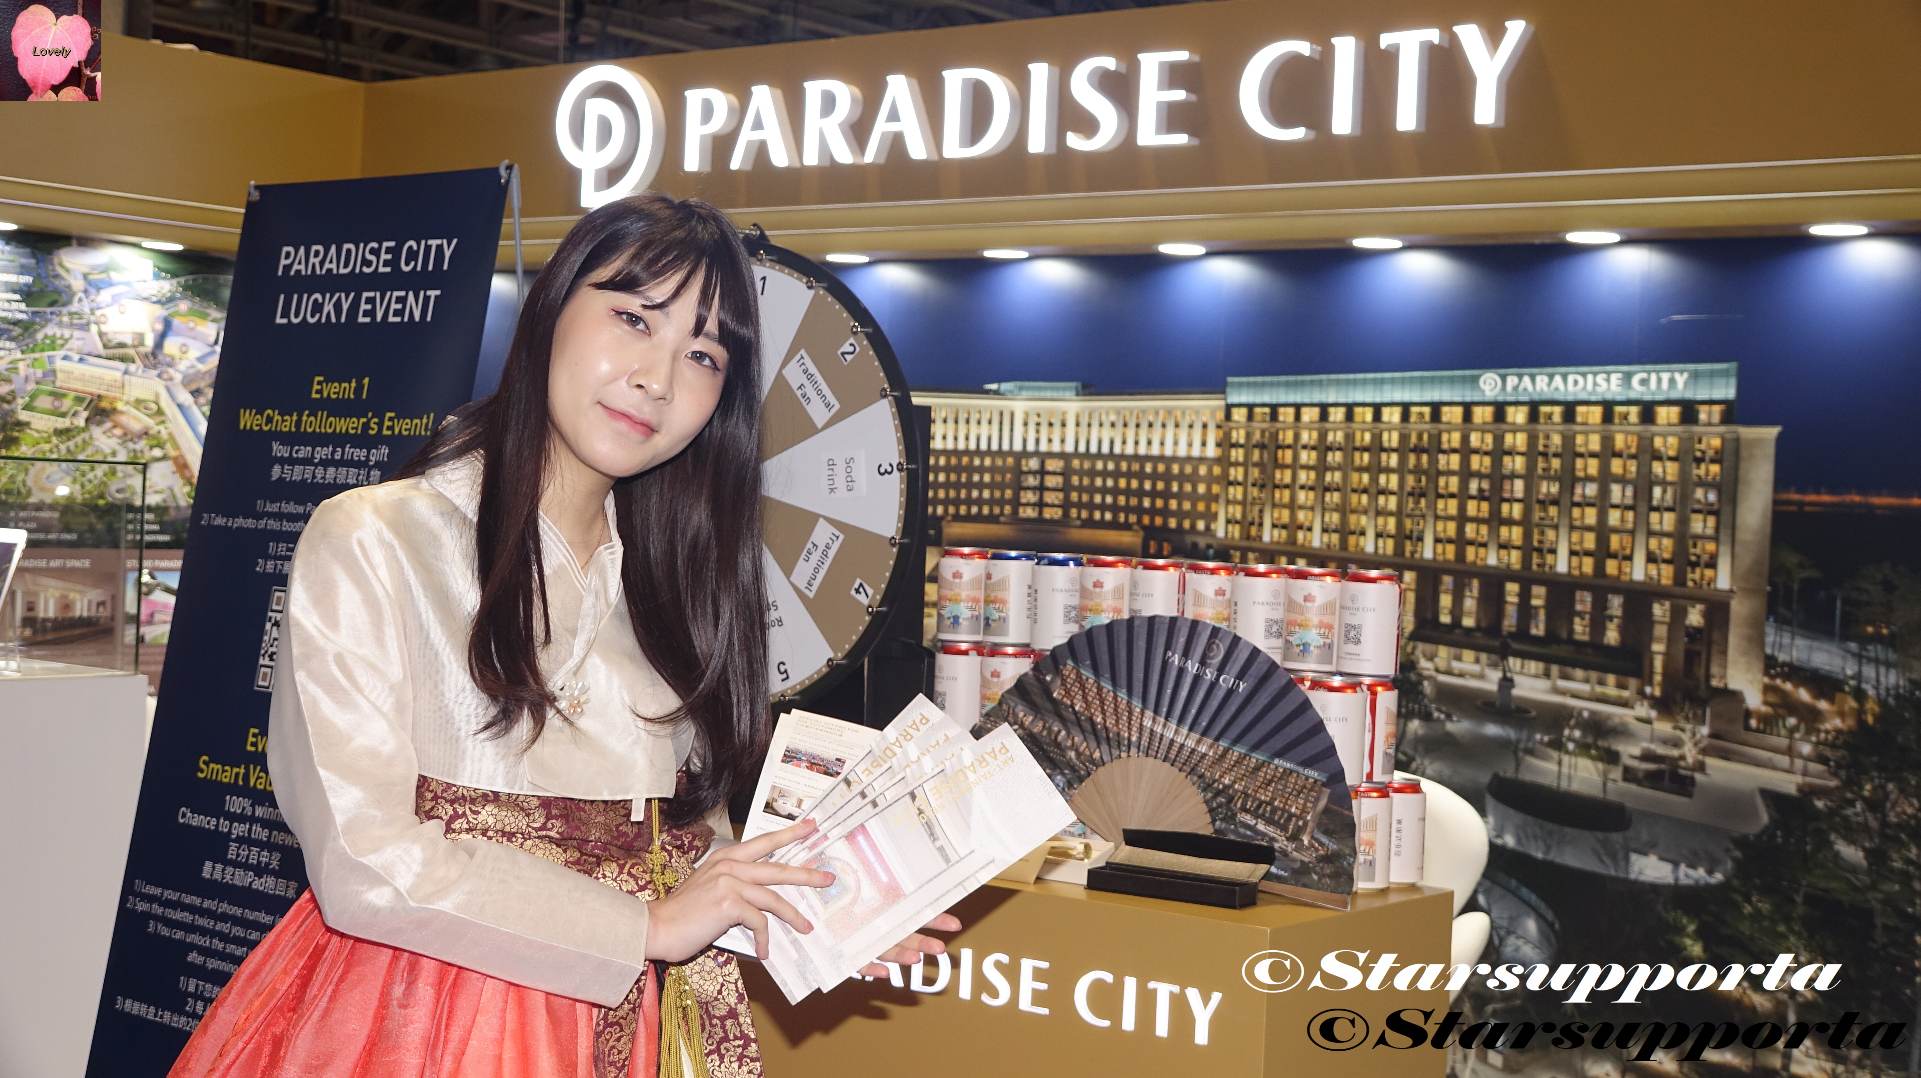 20180515-16 亞洲國際娛樂展 G2E Asia 2018 - Paradise City @ 澳門威尼斯人